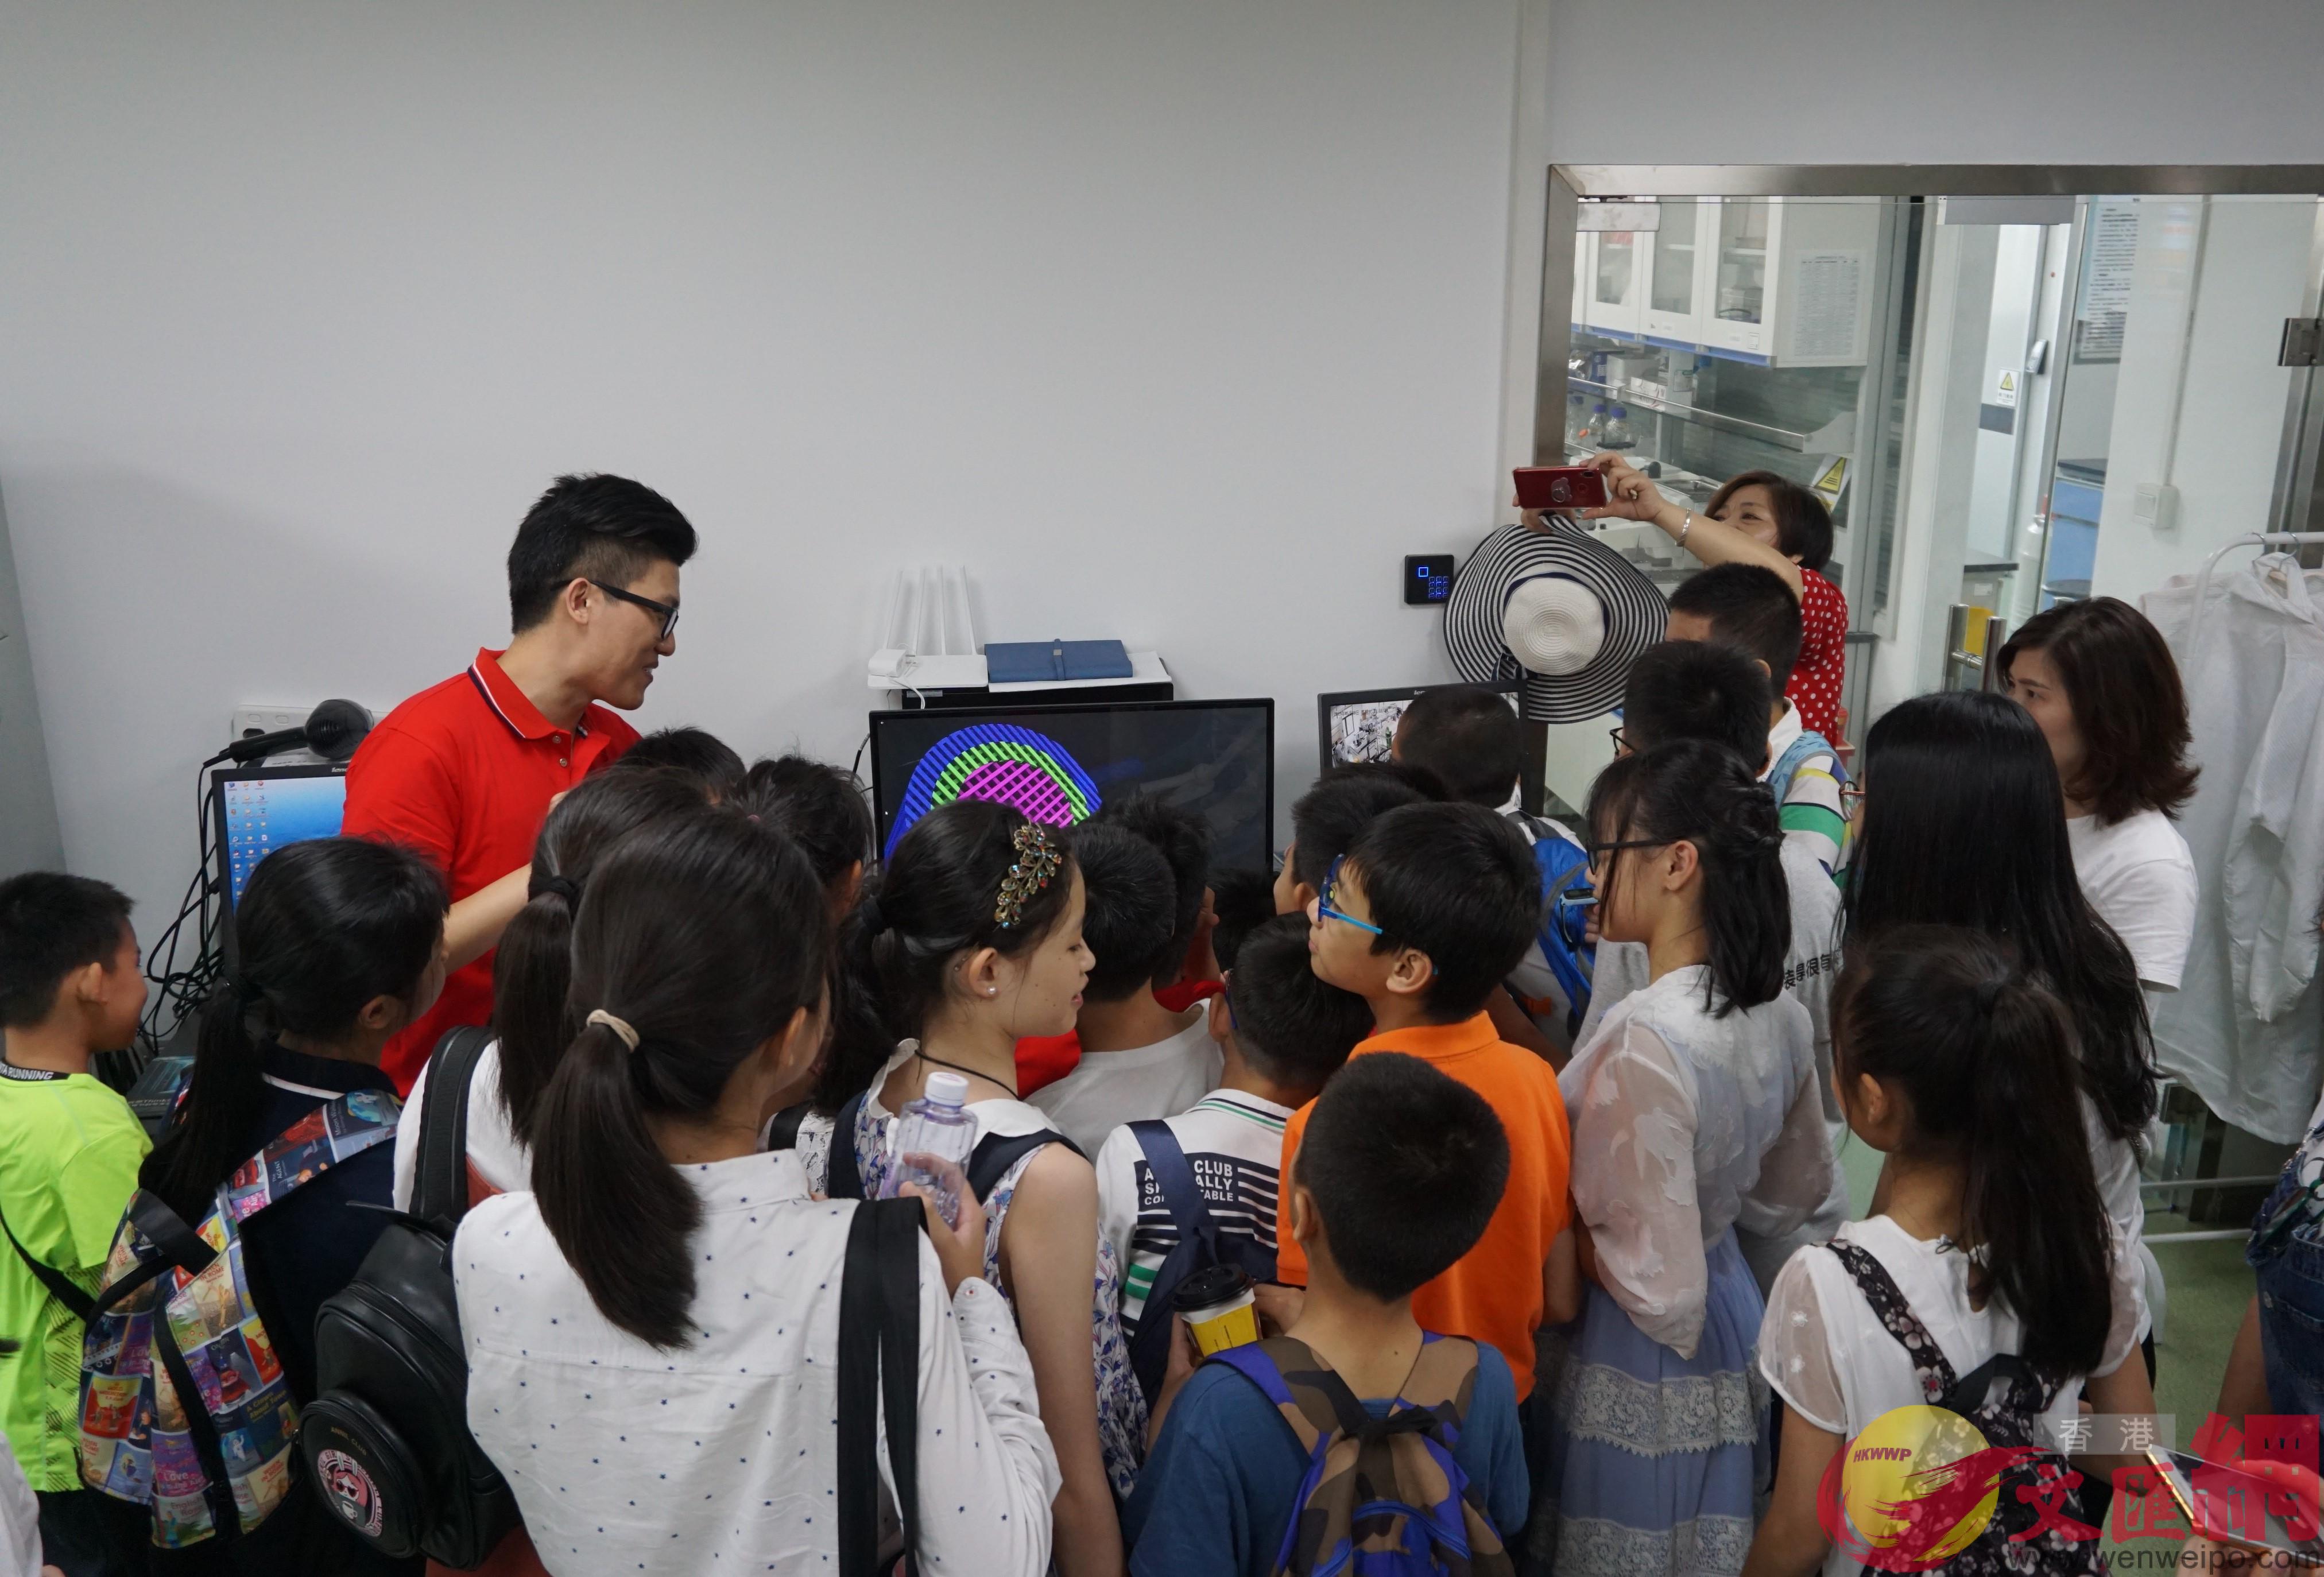 深圳先進院重點實驗室-3D打印骨材料開放市民參觀 ]記者 郭若溪攝^